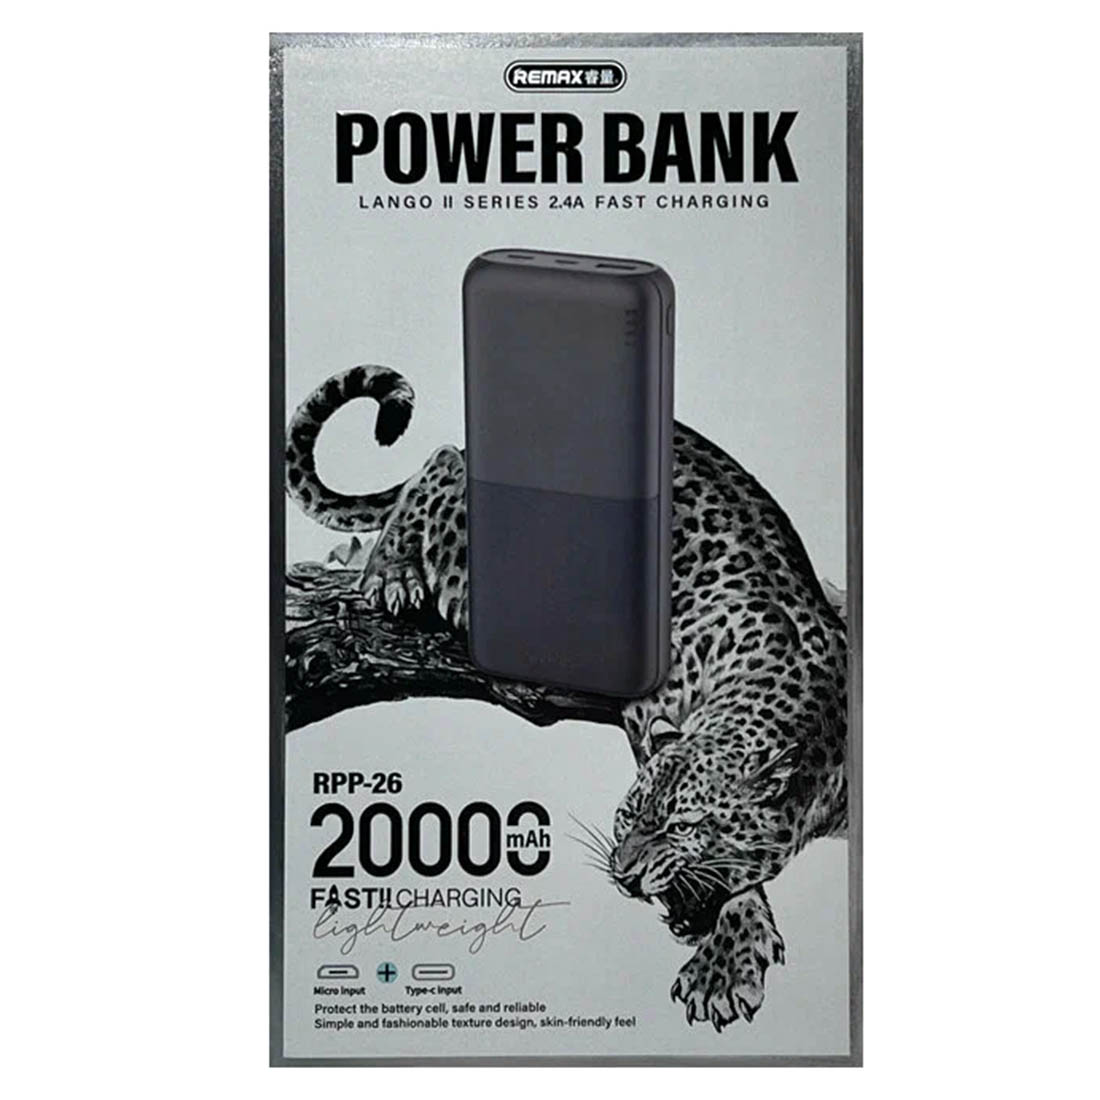 Внешний портативный аккумулятор, Power Bank Remax RPP-26, 20000 mAh, дисплей, цвет черный